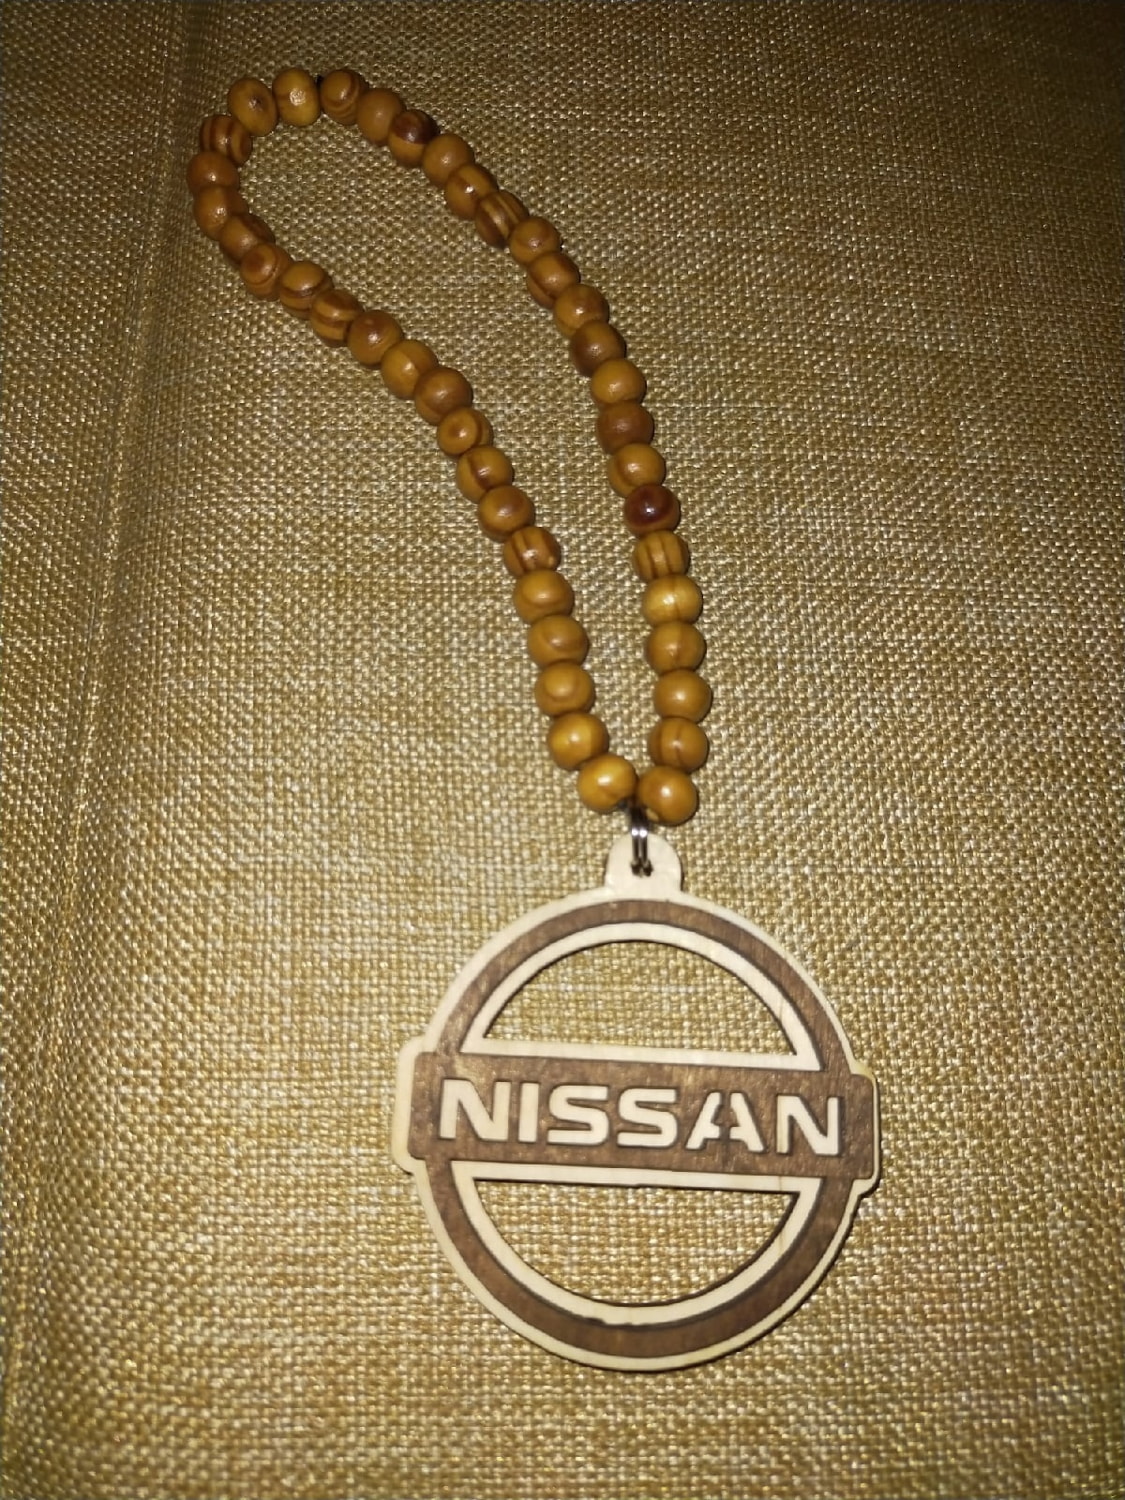 Porte-clés Nissan en bois avec logo Nissan découpé au laser